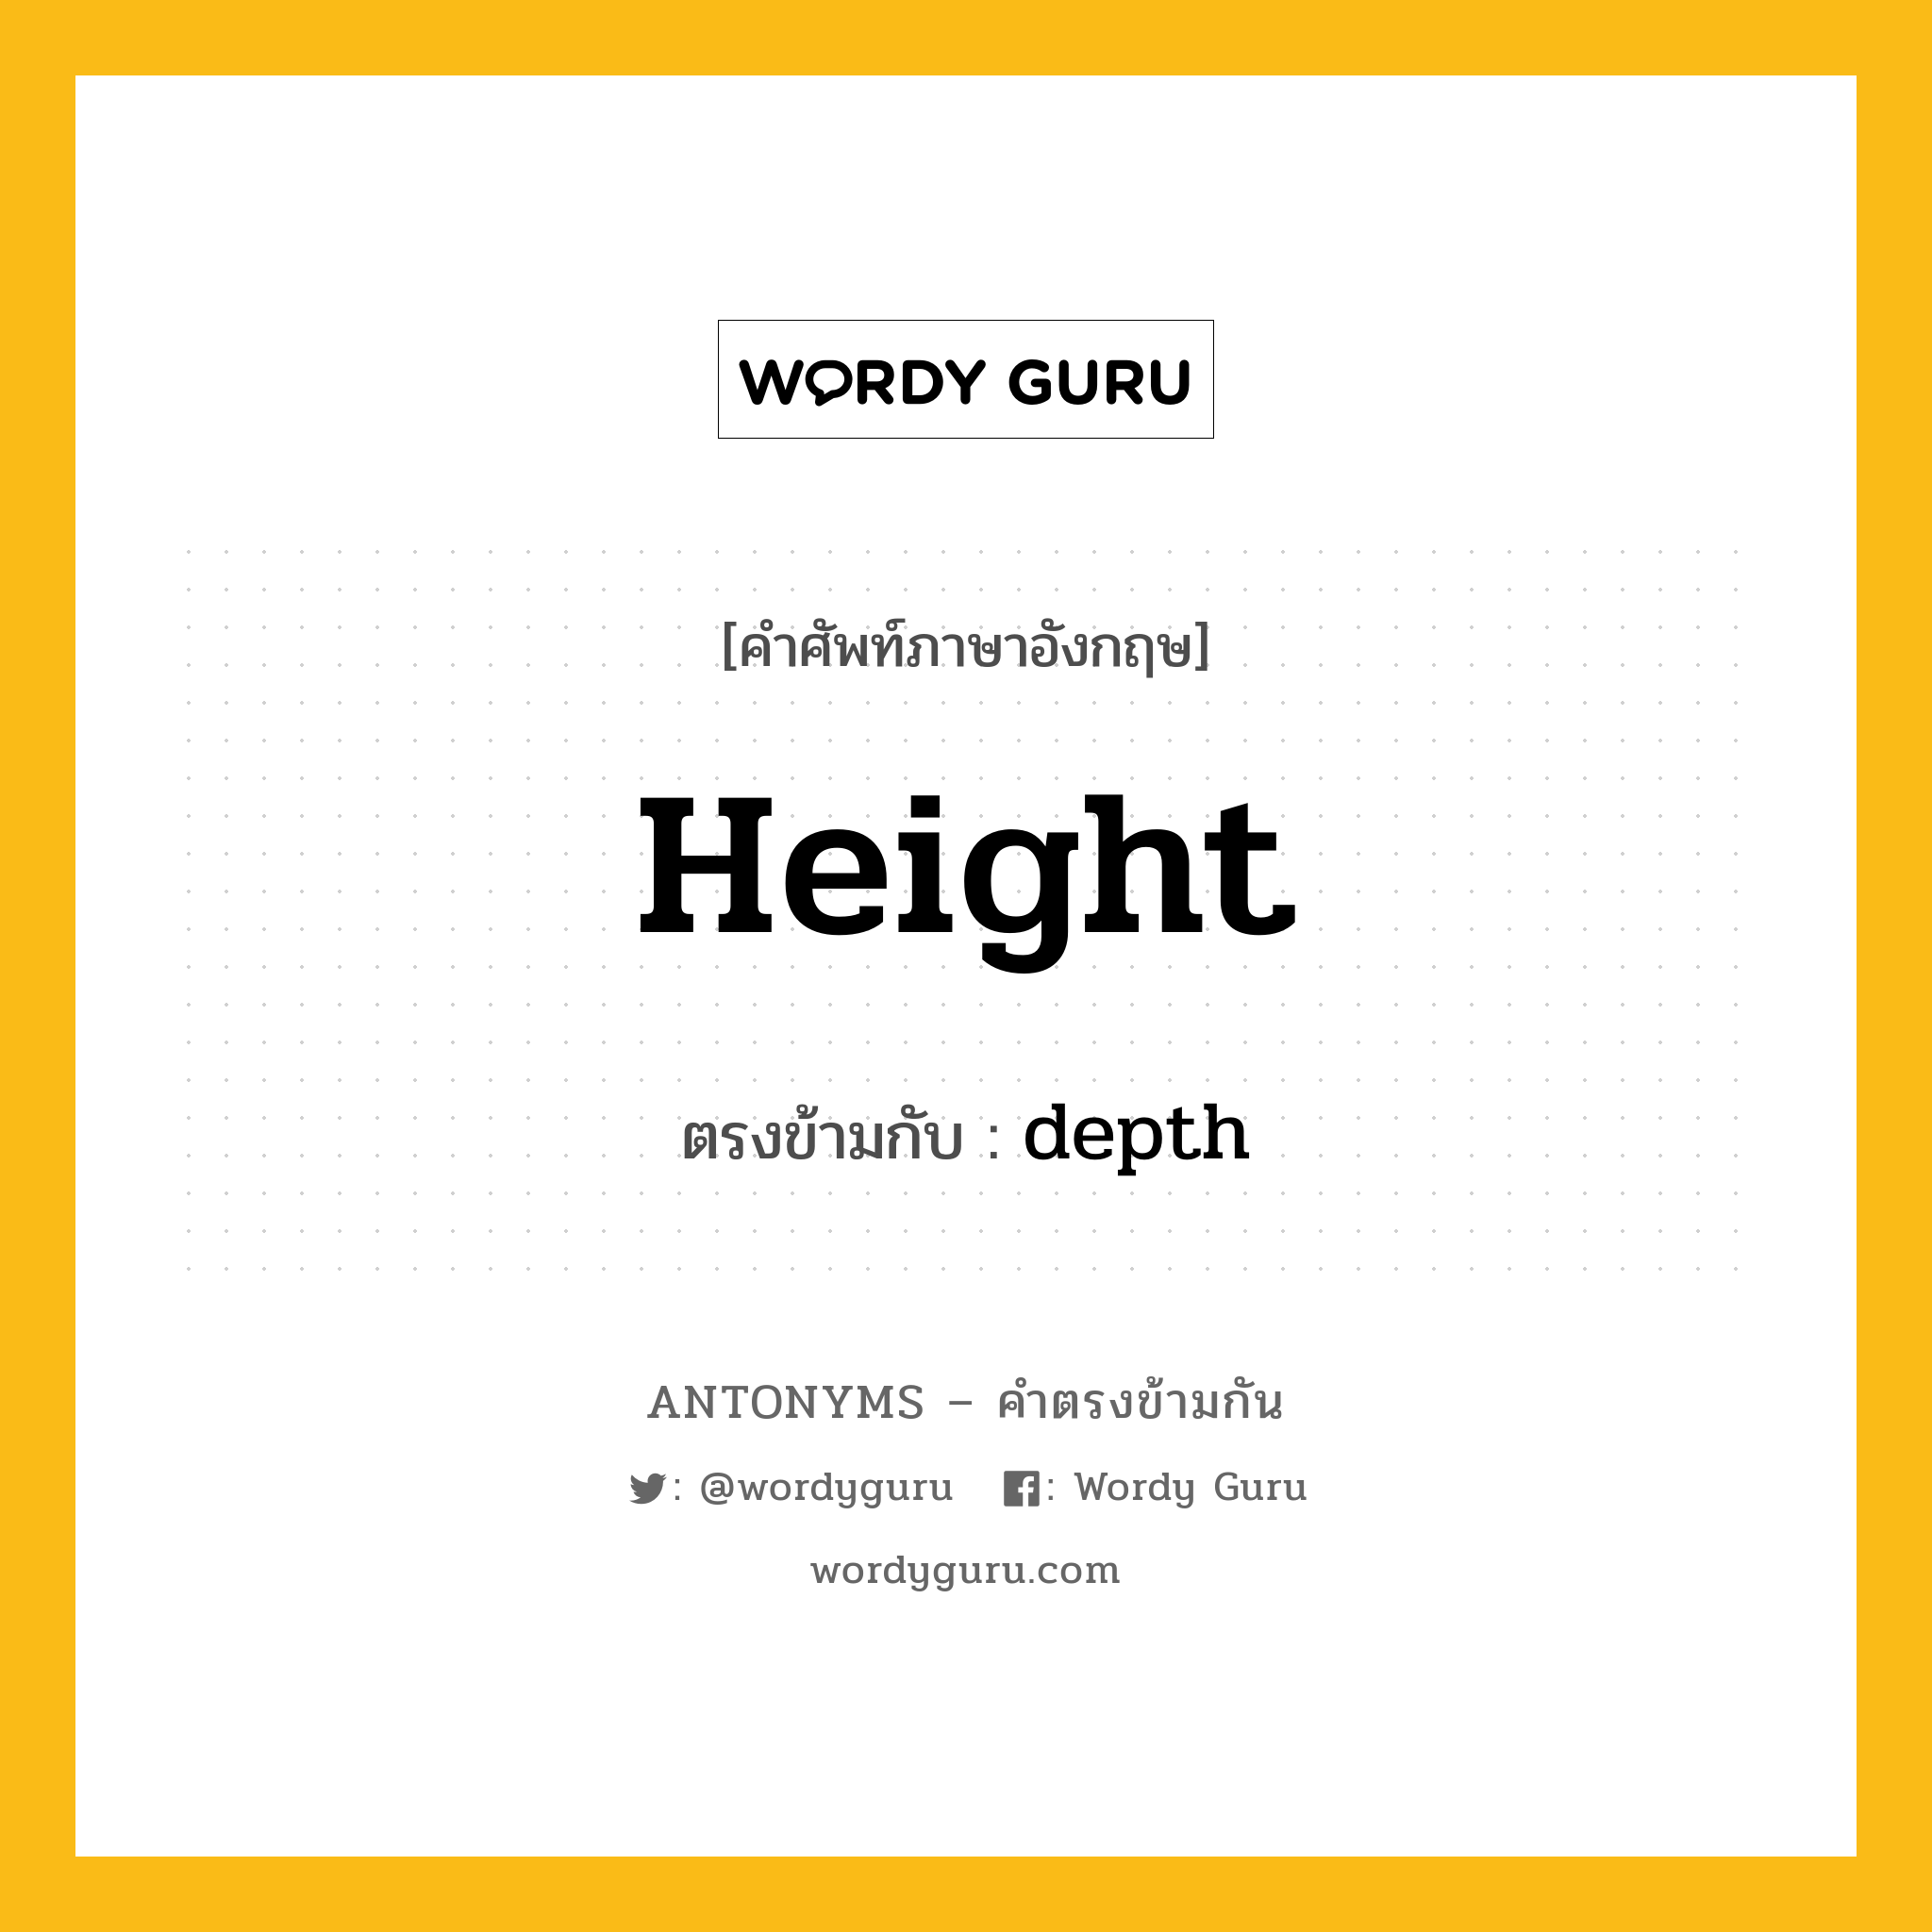 height เป็นคำตรงข้ามกับคำไหนบ้าง?, คำศัพท์ภาษาอังกฤษ height ตรงข้ามกับ depth หมวด depth